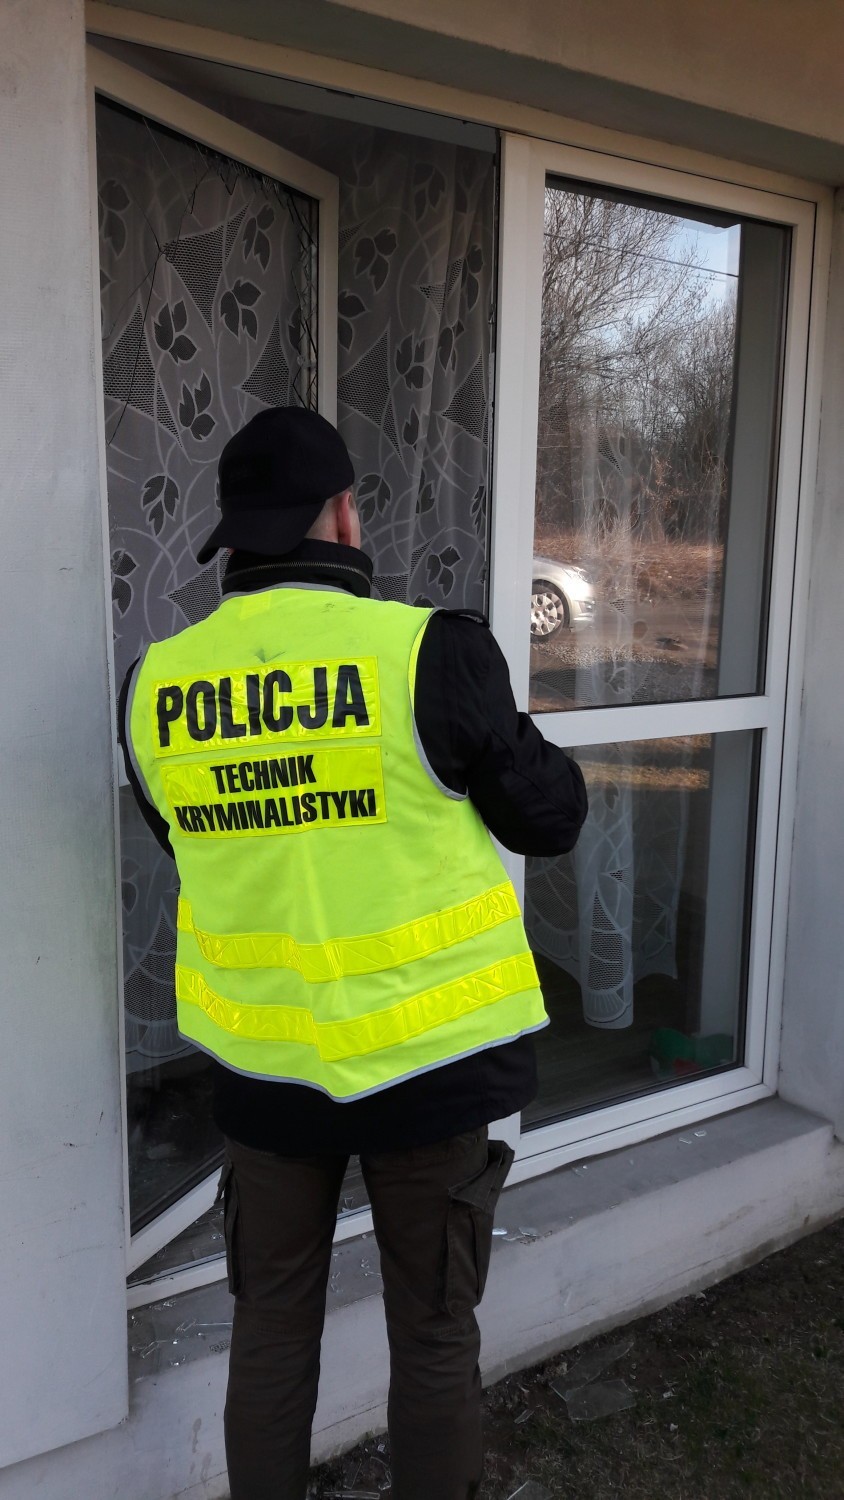 Brzesko. 27-letni diler próbował pozbyć się narkotyków wyrzucając je przez okno, teraz jest w areszcie